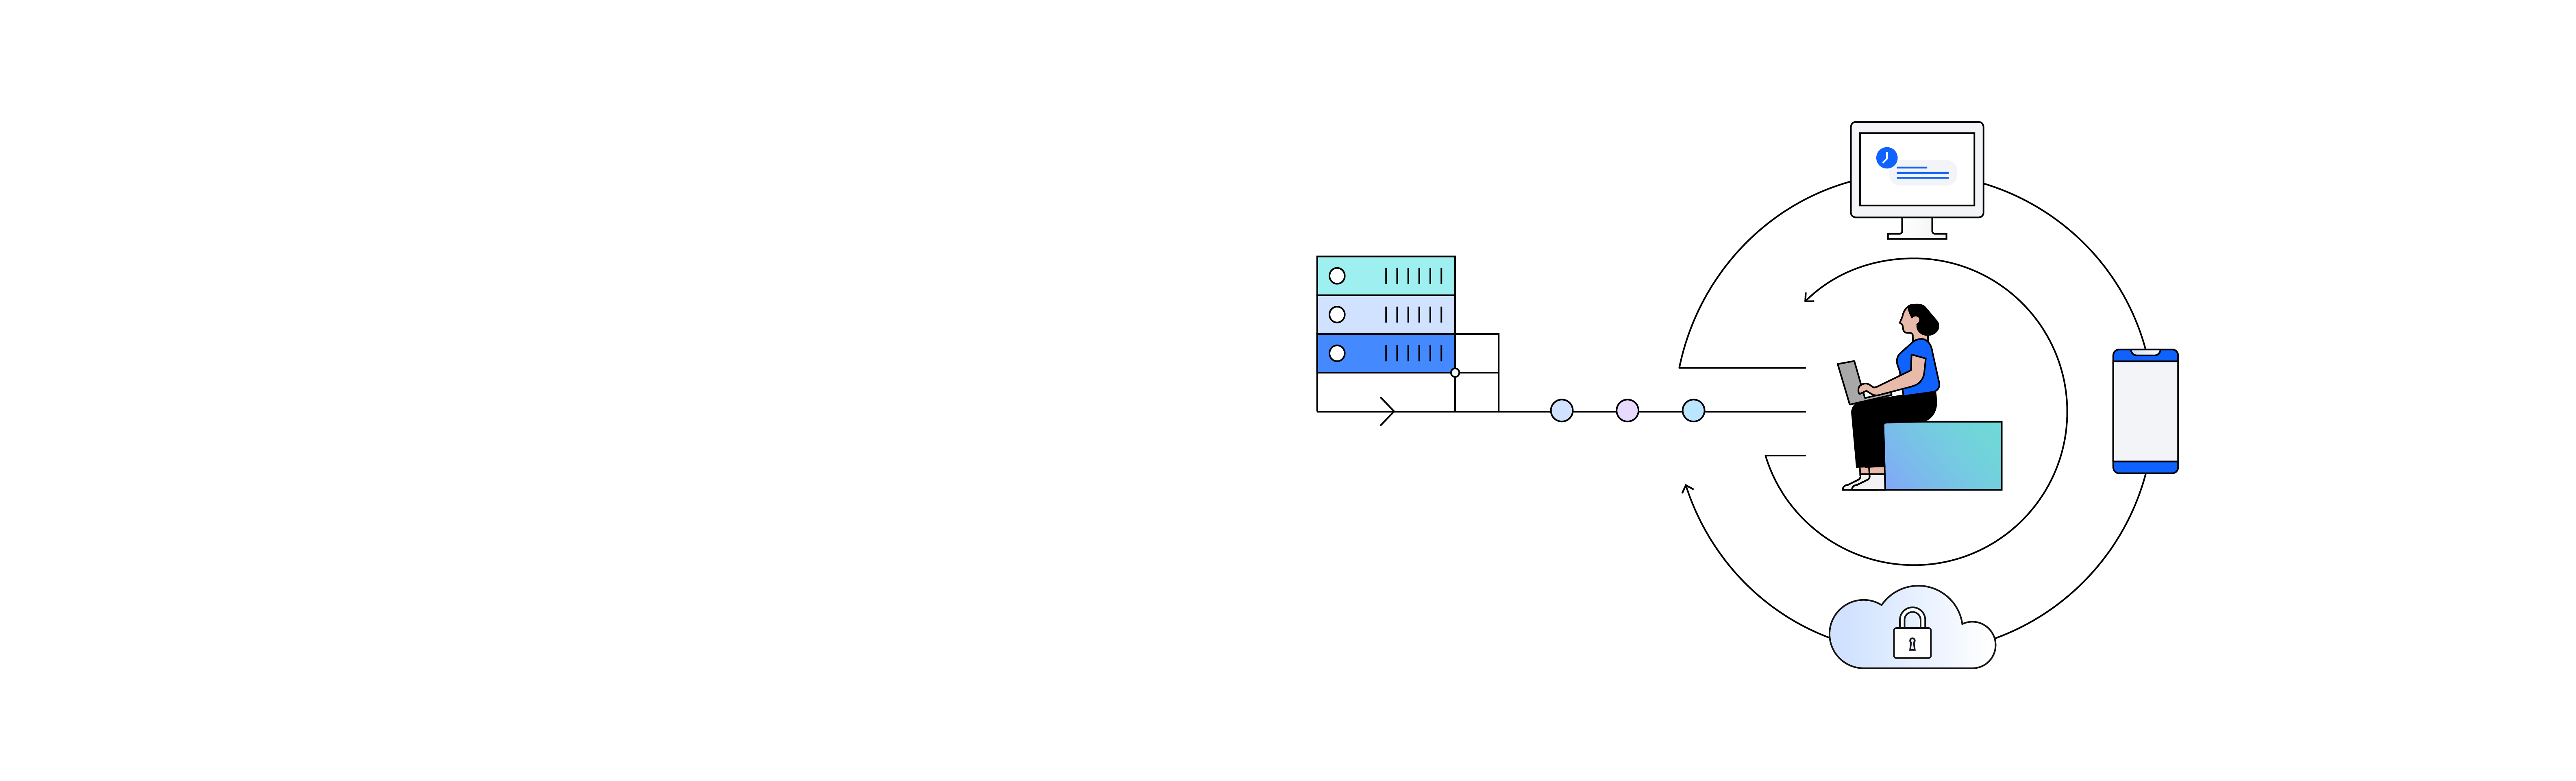 Ilustração de armazenamento definido por software